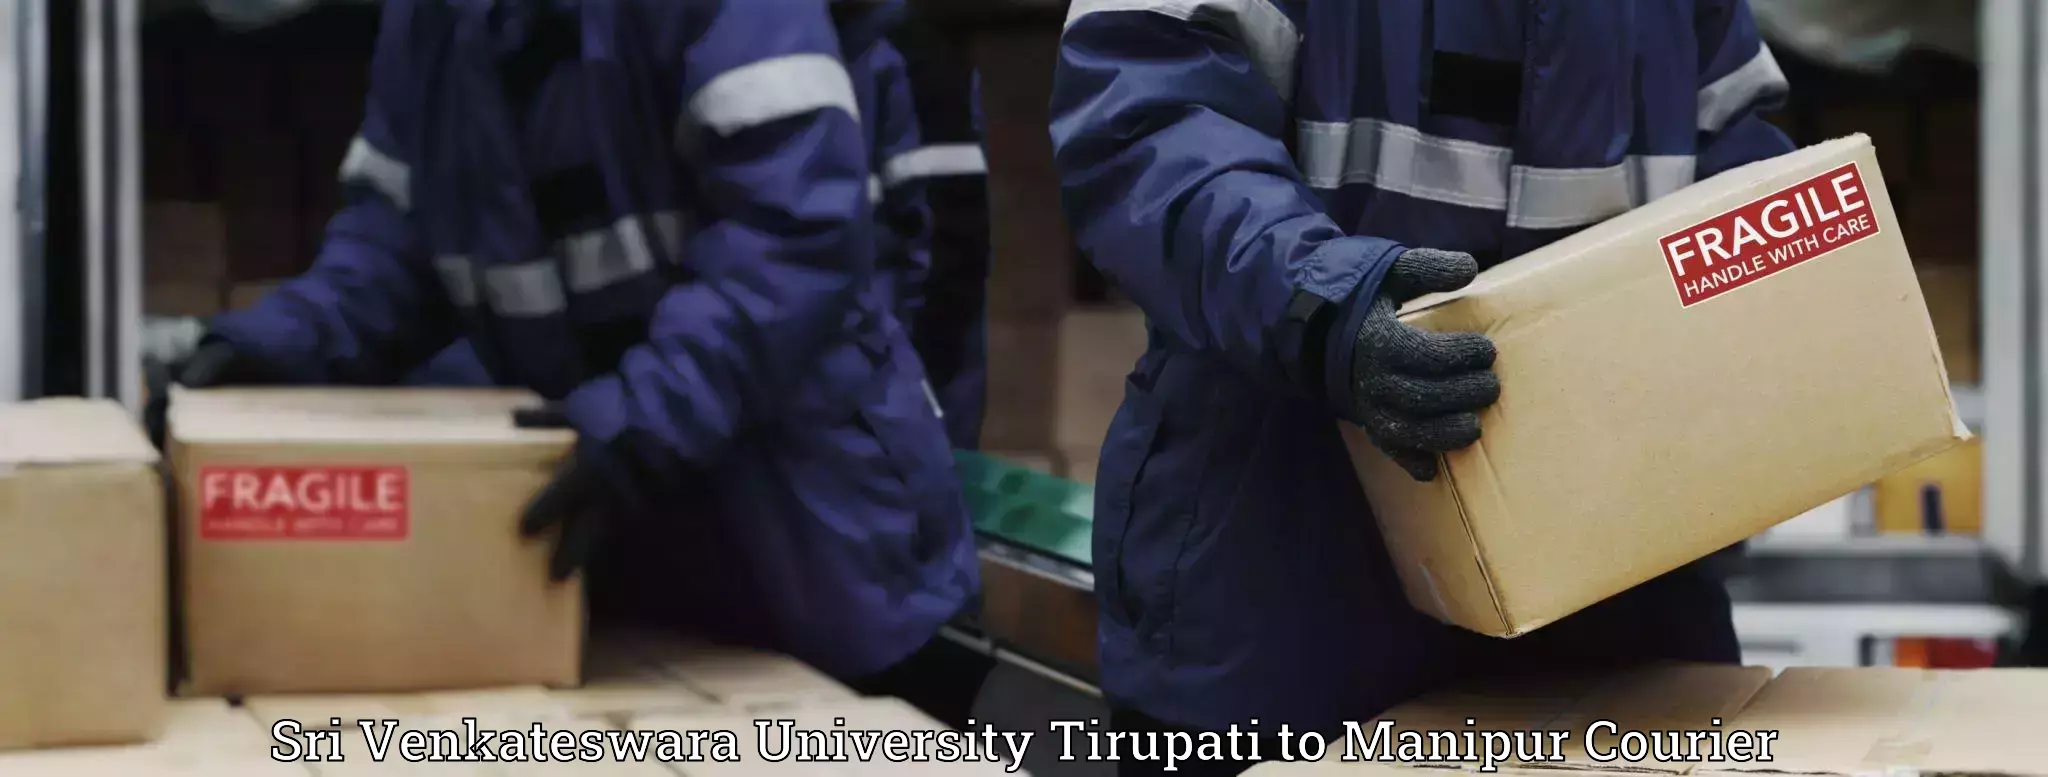 Versatile courier offerings Sri Venkateswara University Tirupati to Manipur